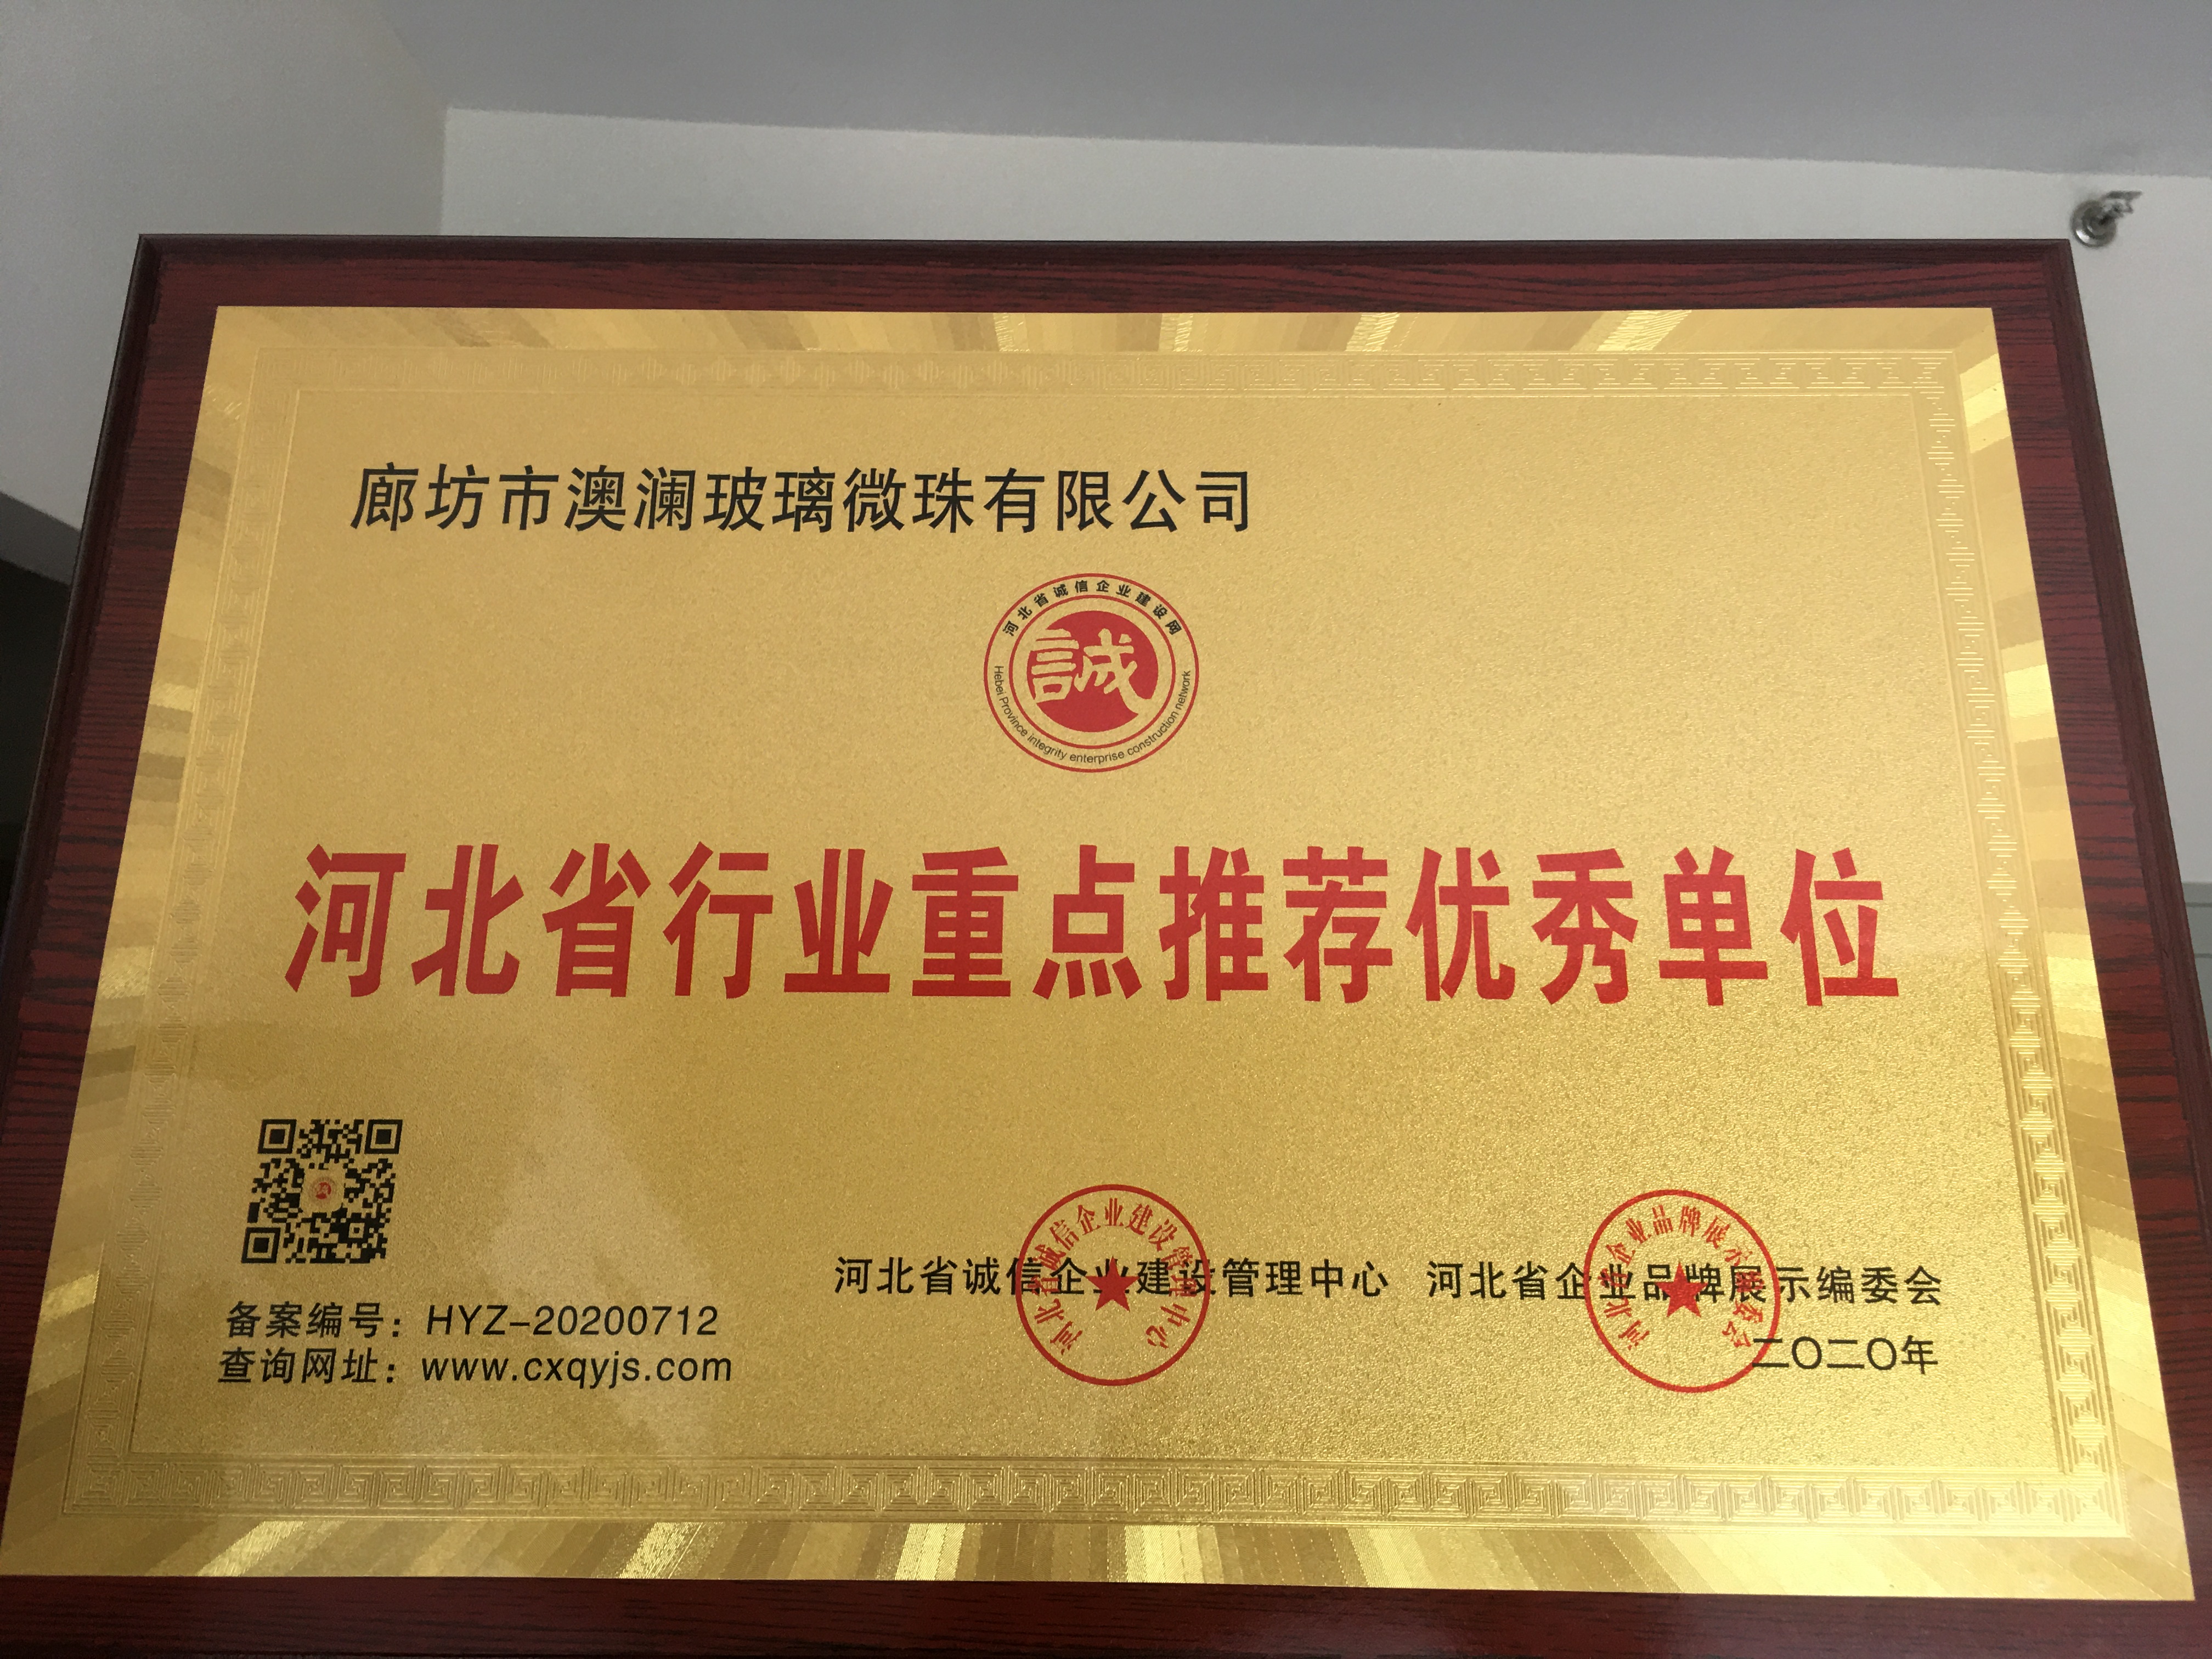 澳瀾玻璃珠被評為河北省行業重點推薦優秀單位并授予牌匾